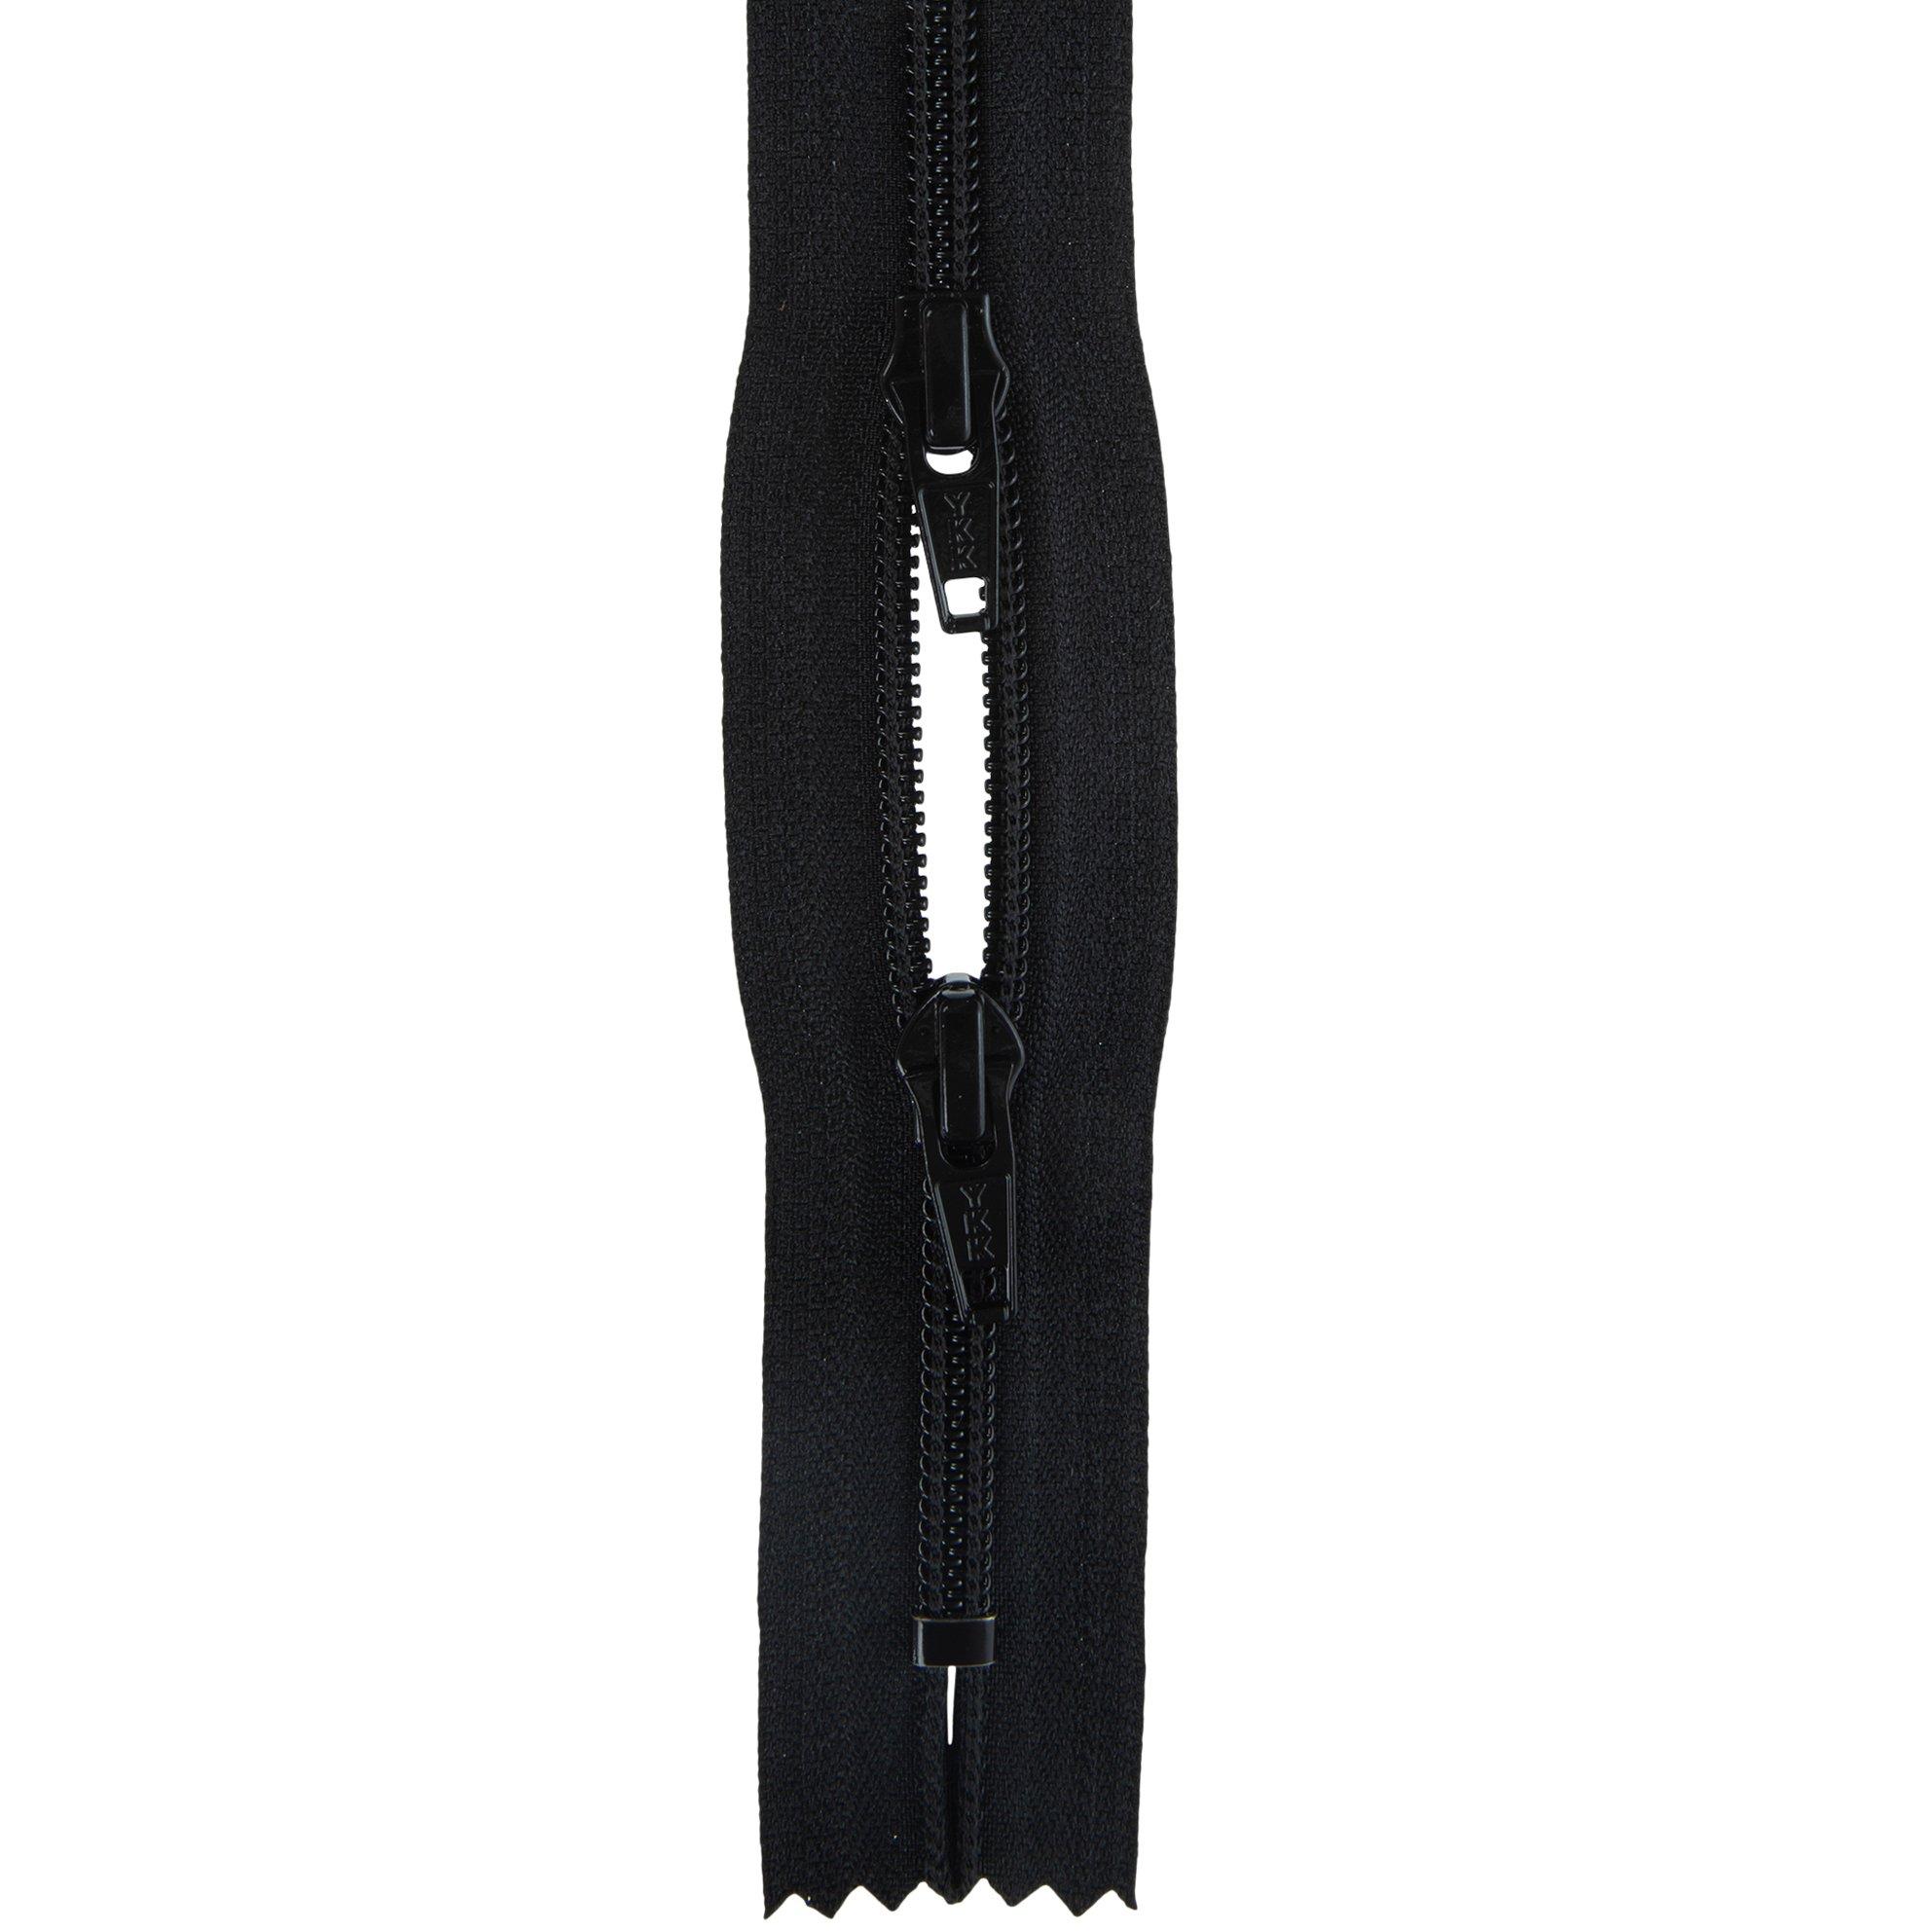 Nylon Coil Zipper Replacement Slider Kit, Hobby Lobby